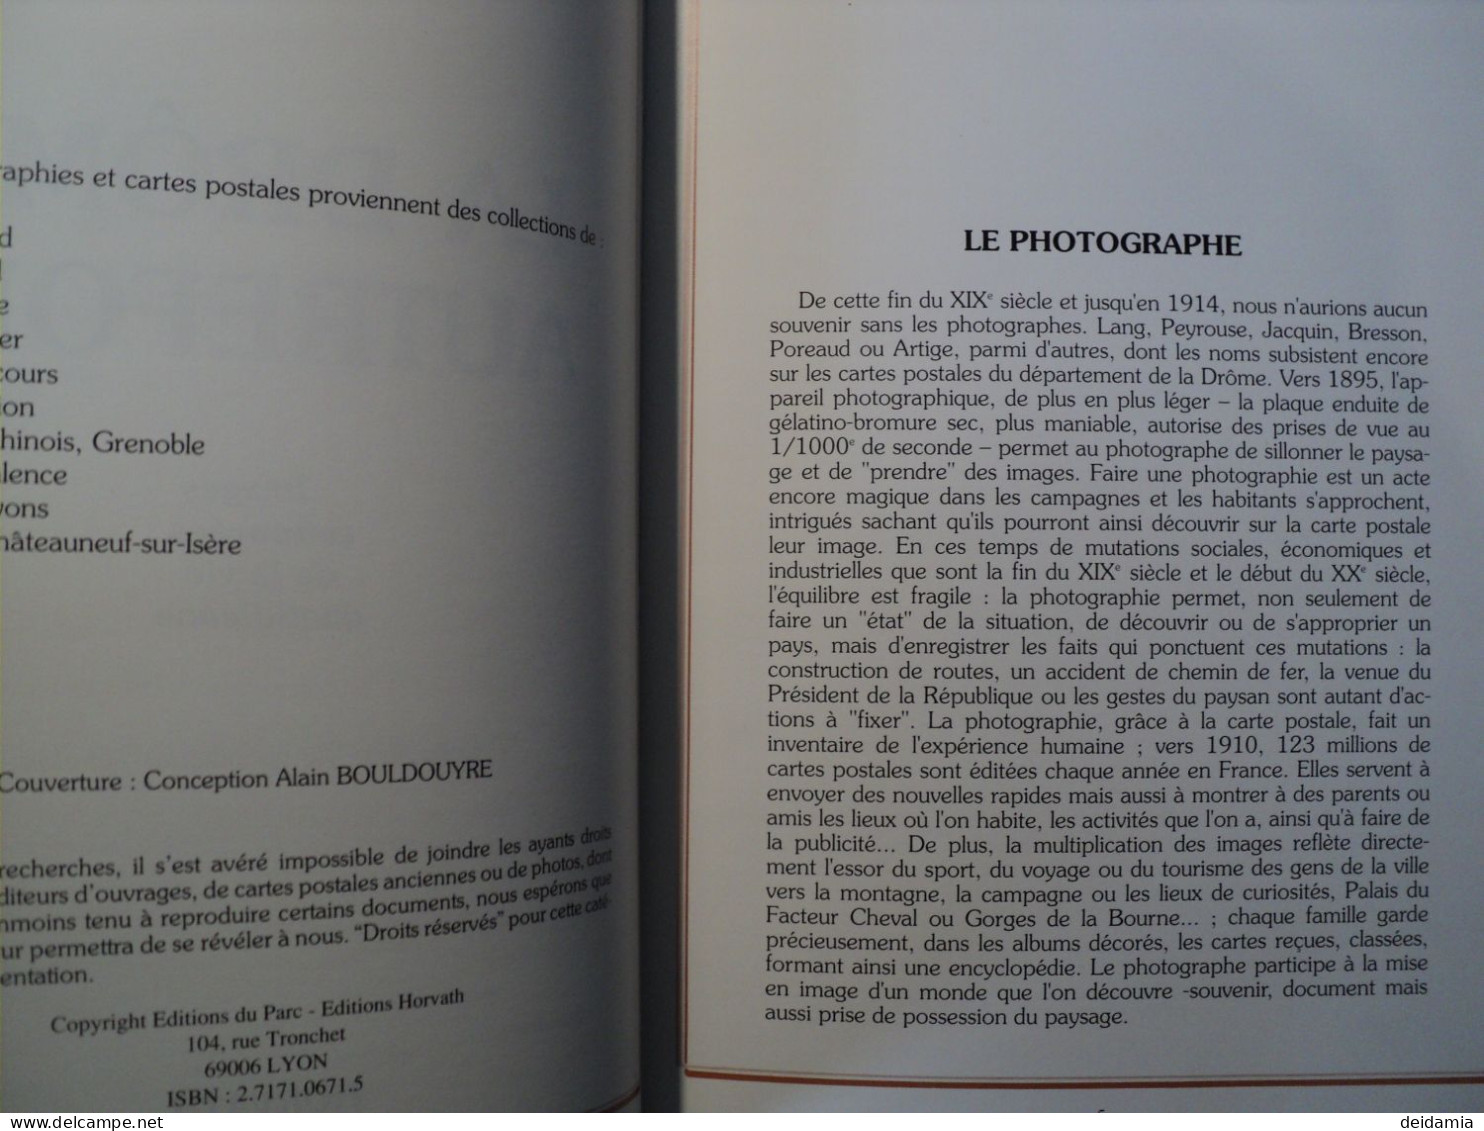 LA DROME AUTREFOIS. 1993. COMPILATION DE CARTES POSTALES ANCIENNES. MARTINE SADION. EDITIONS HORVATH. ROUTES ET CHEMINS - Rhône-Alpes